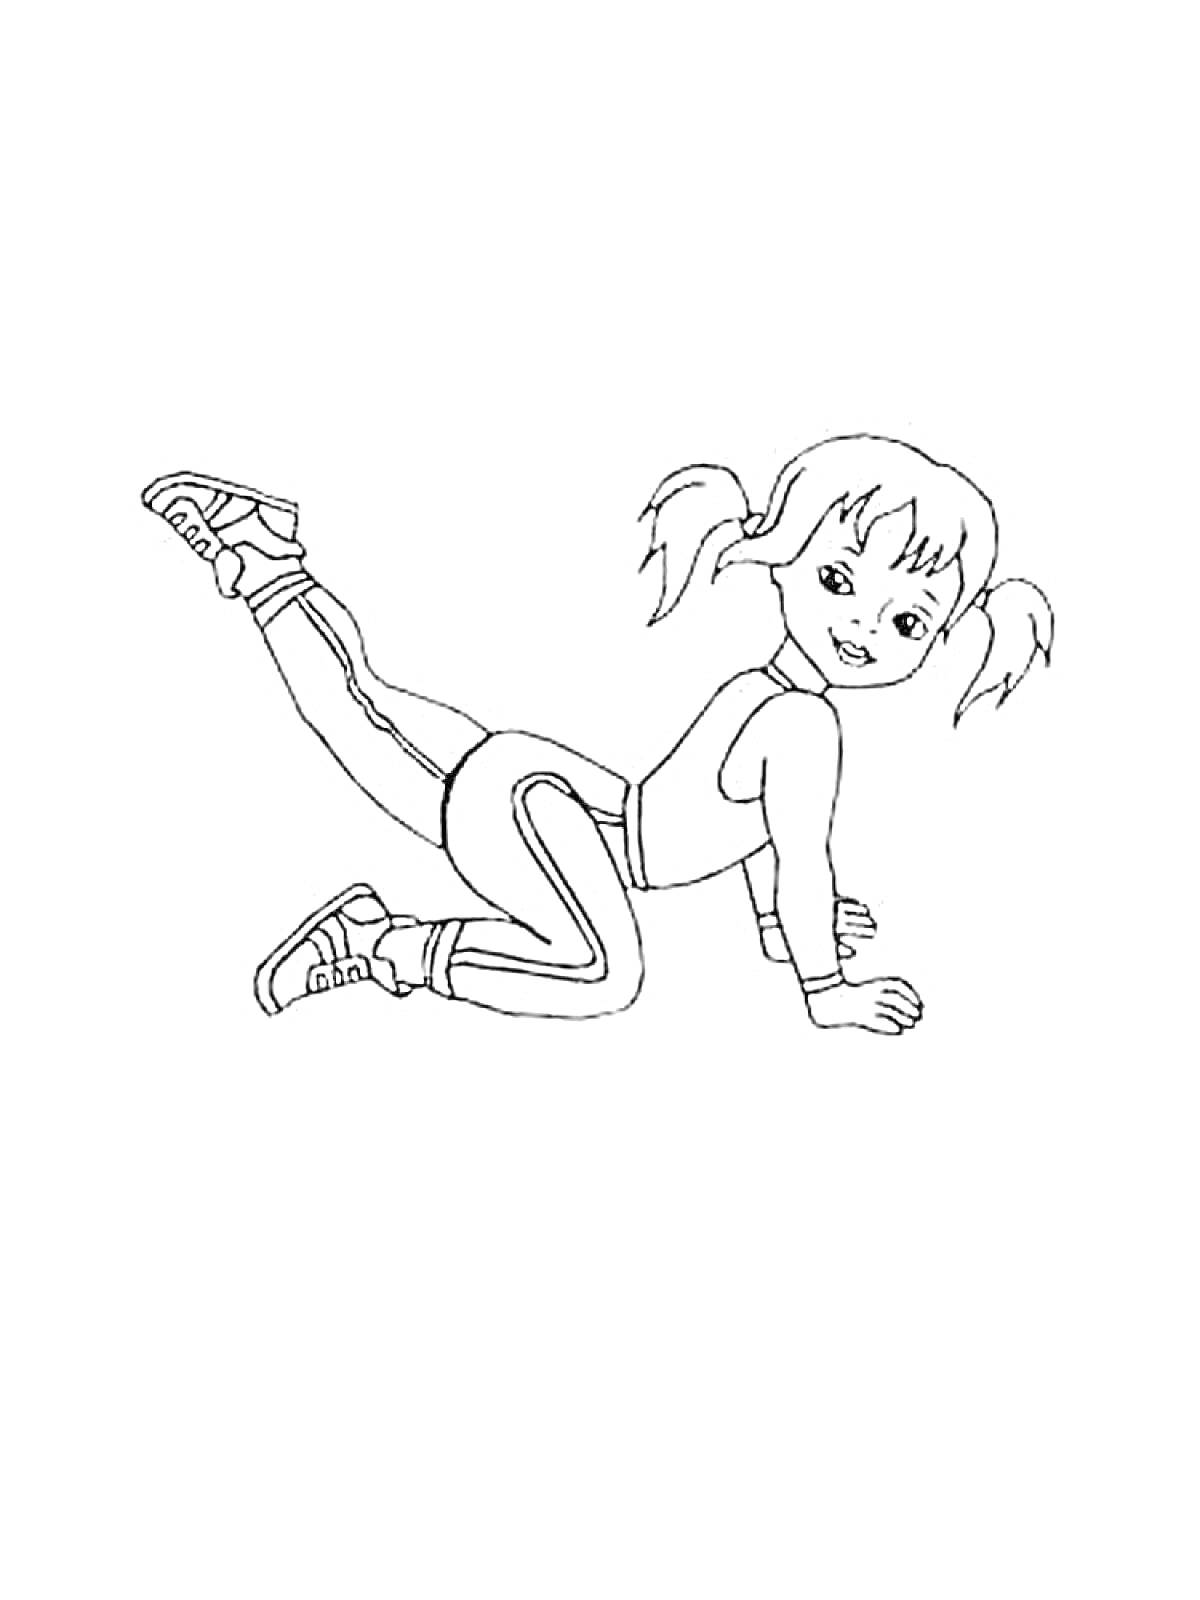 Девочка на коленях делает упражнение, поднимая одну ногу назад.